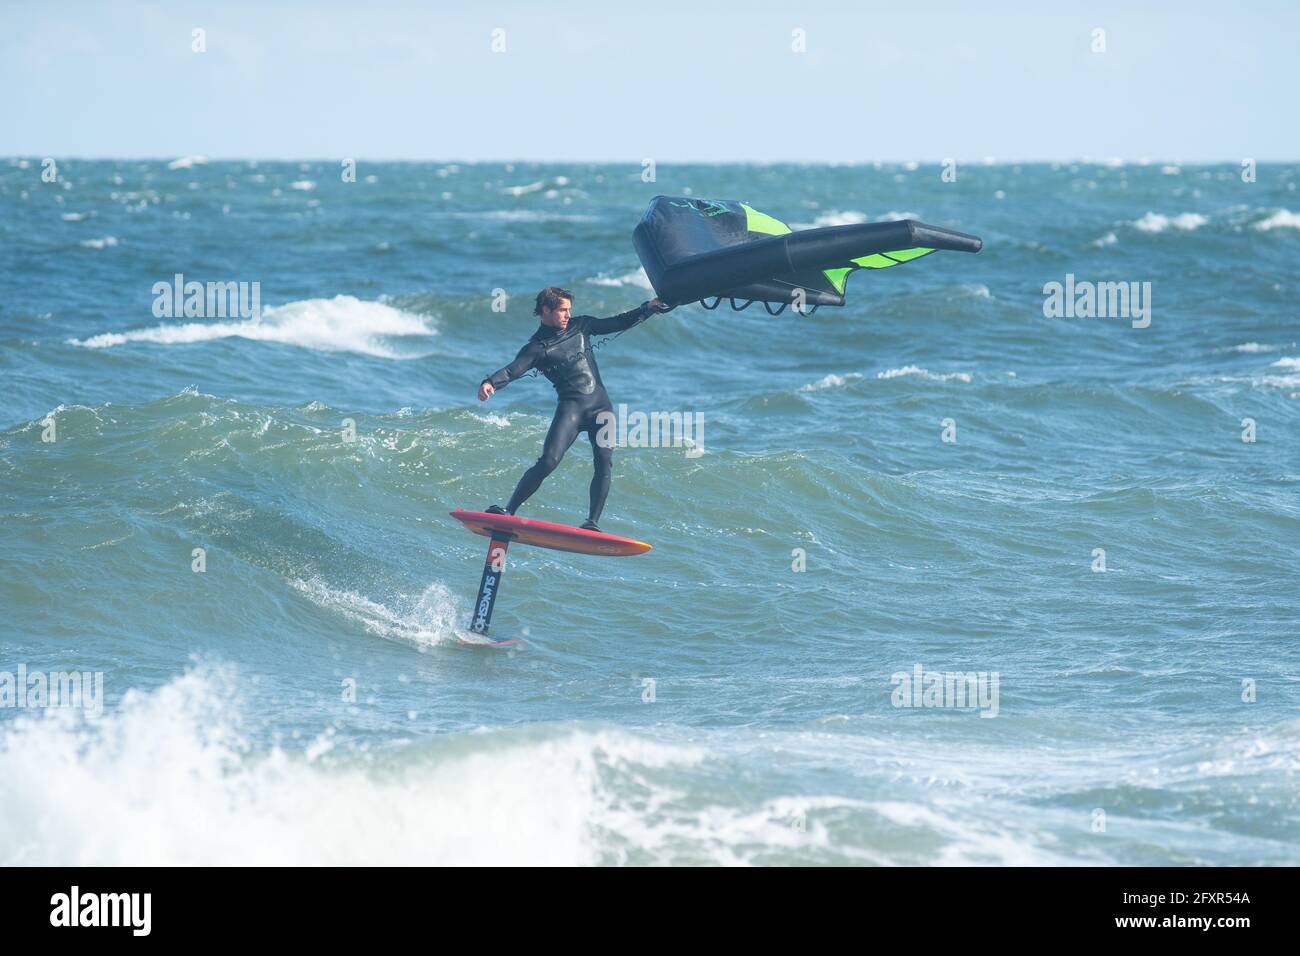 Le surfeur professionnel James Jenkins surfe surfe une vague sur son escadre surfeur dans l'océan Atlantique à Nags Head, Caroline du Nord, États-Unis, Amérique du Nord Banque D'Images